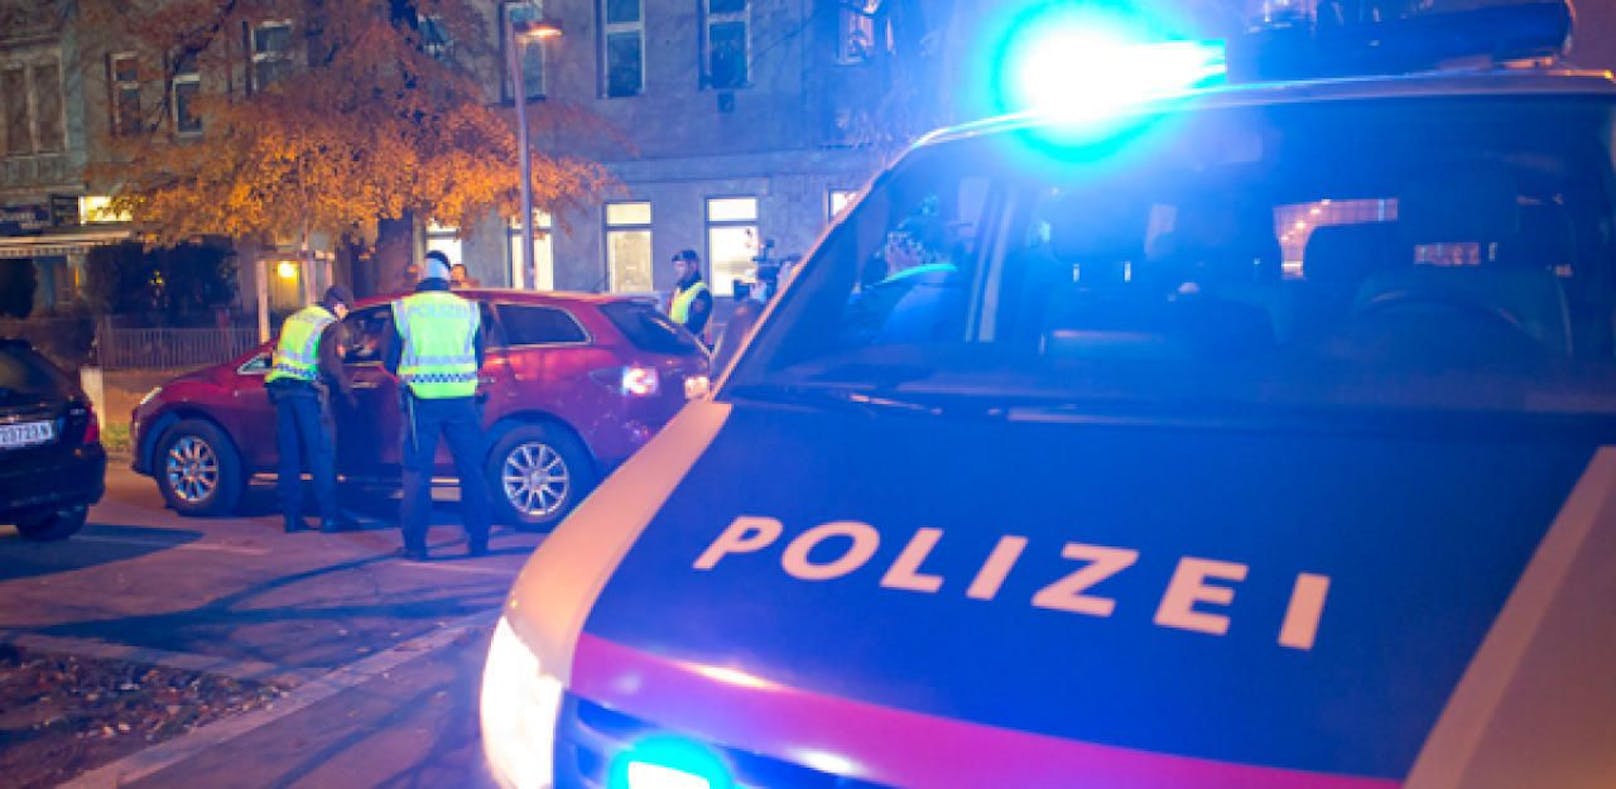 Die Polizei hatte es in Salzburg mit einer sexuellen Belästigung, einem Vergewaltigungsversuch und einer Betäubung zu tun.